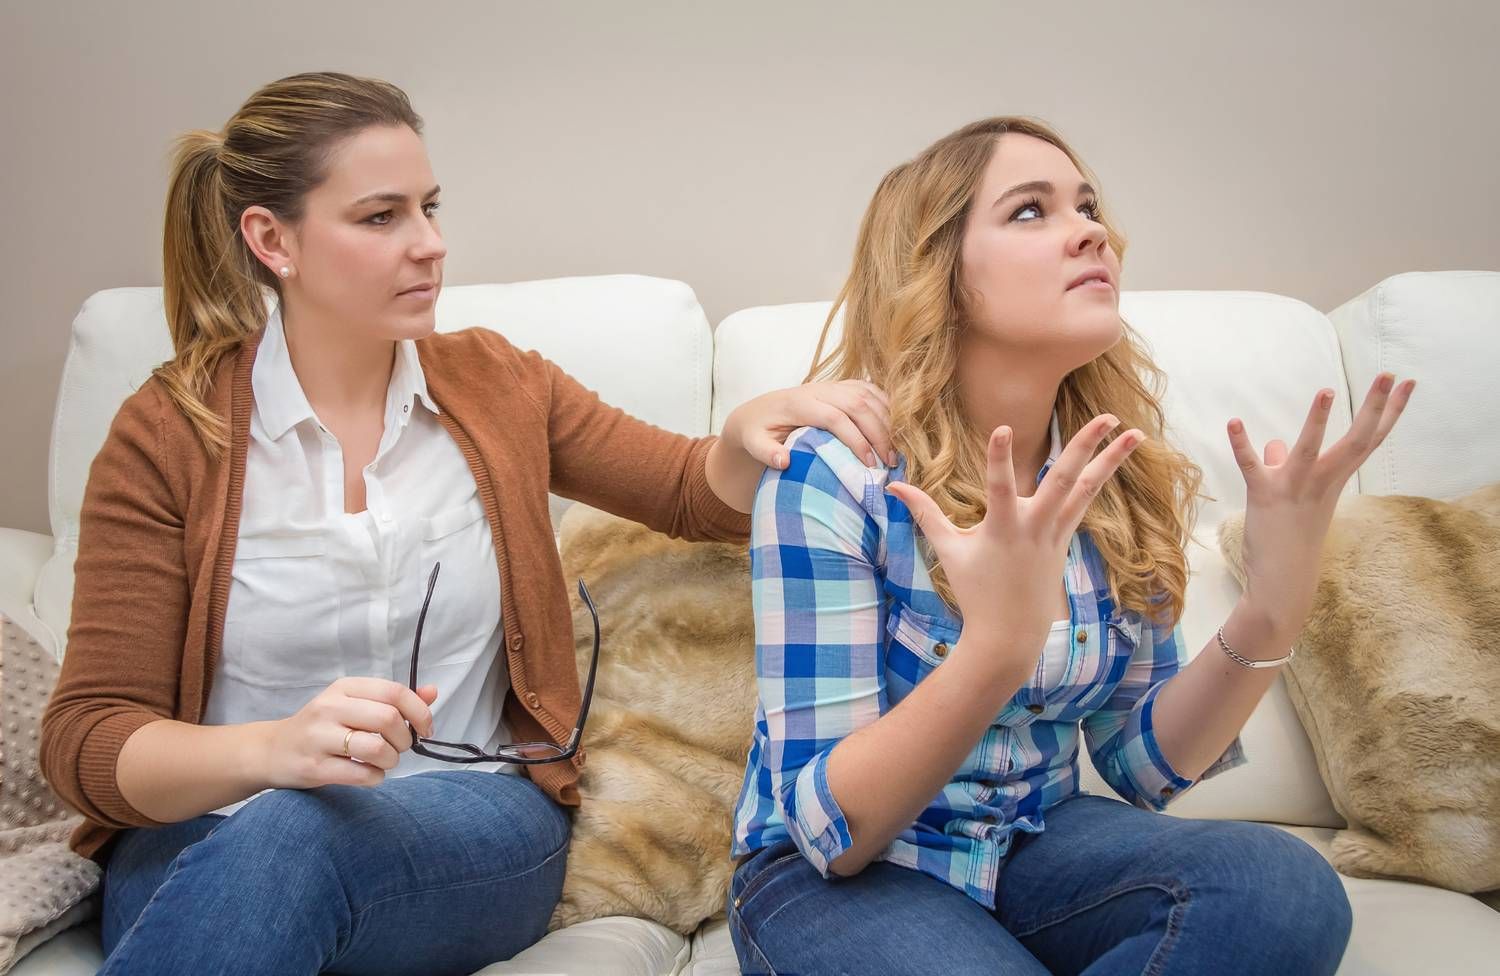 5 тревожных сигналов в поведении подростков, на которые нужно обращать внимание